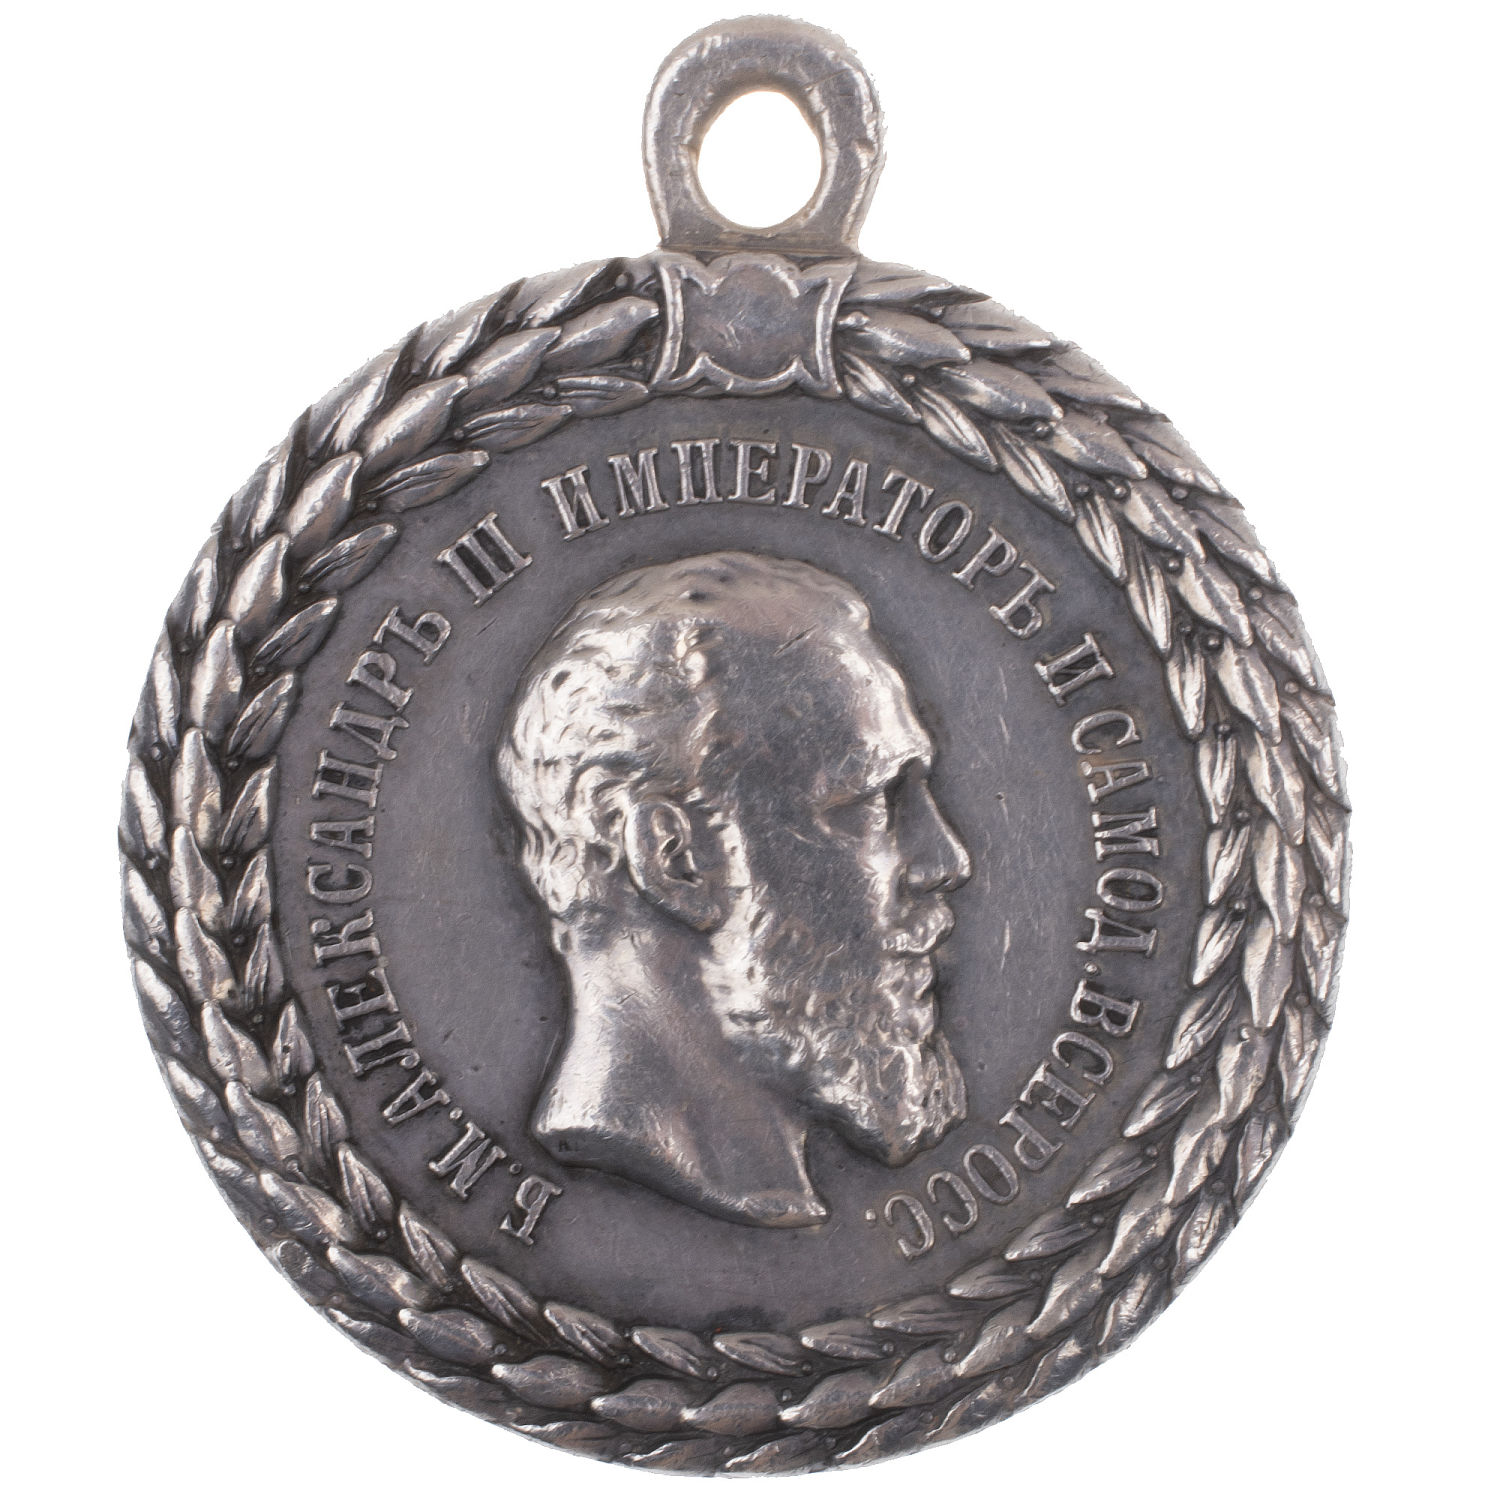 Медаль "За беспорочную службу в полиции" с портретом Императора Александра III (образца 1886 г), 33 звена в венке.